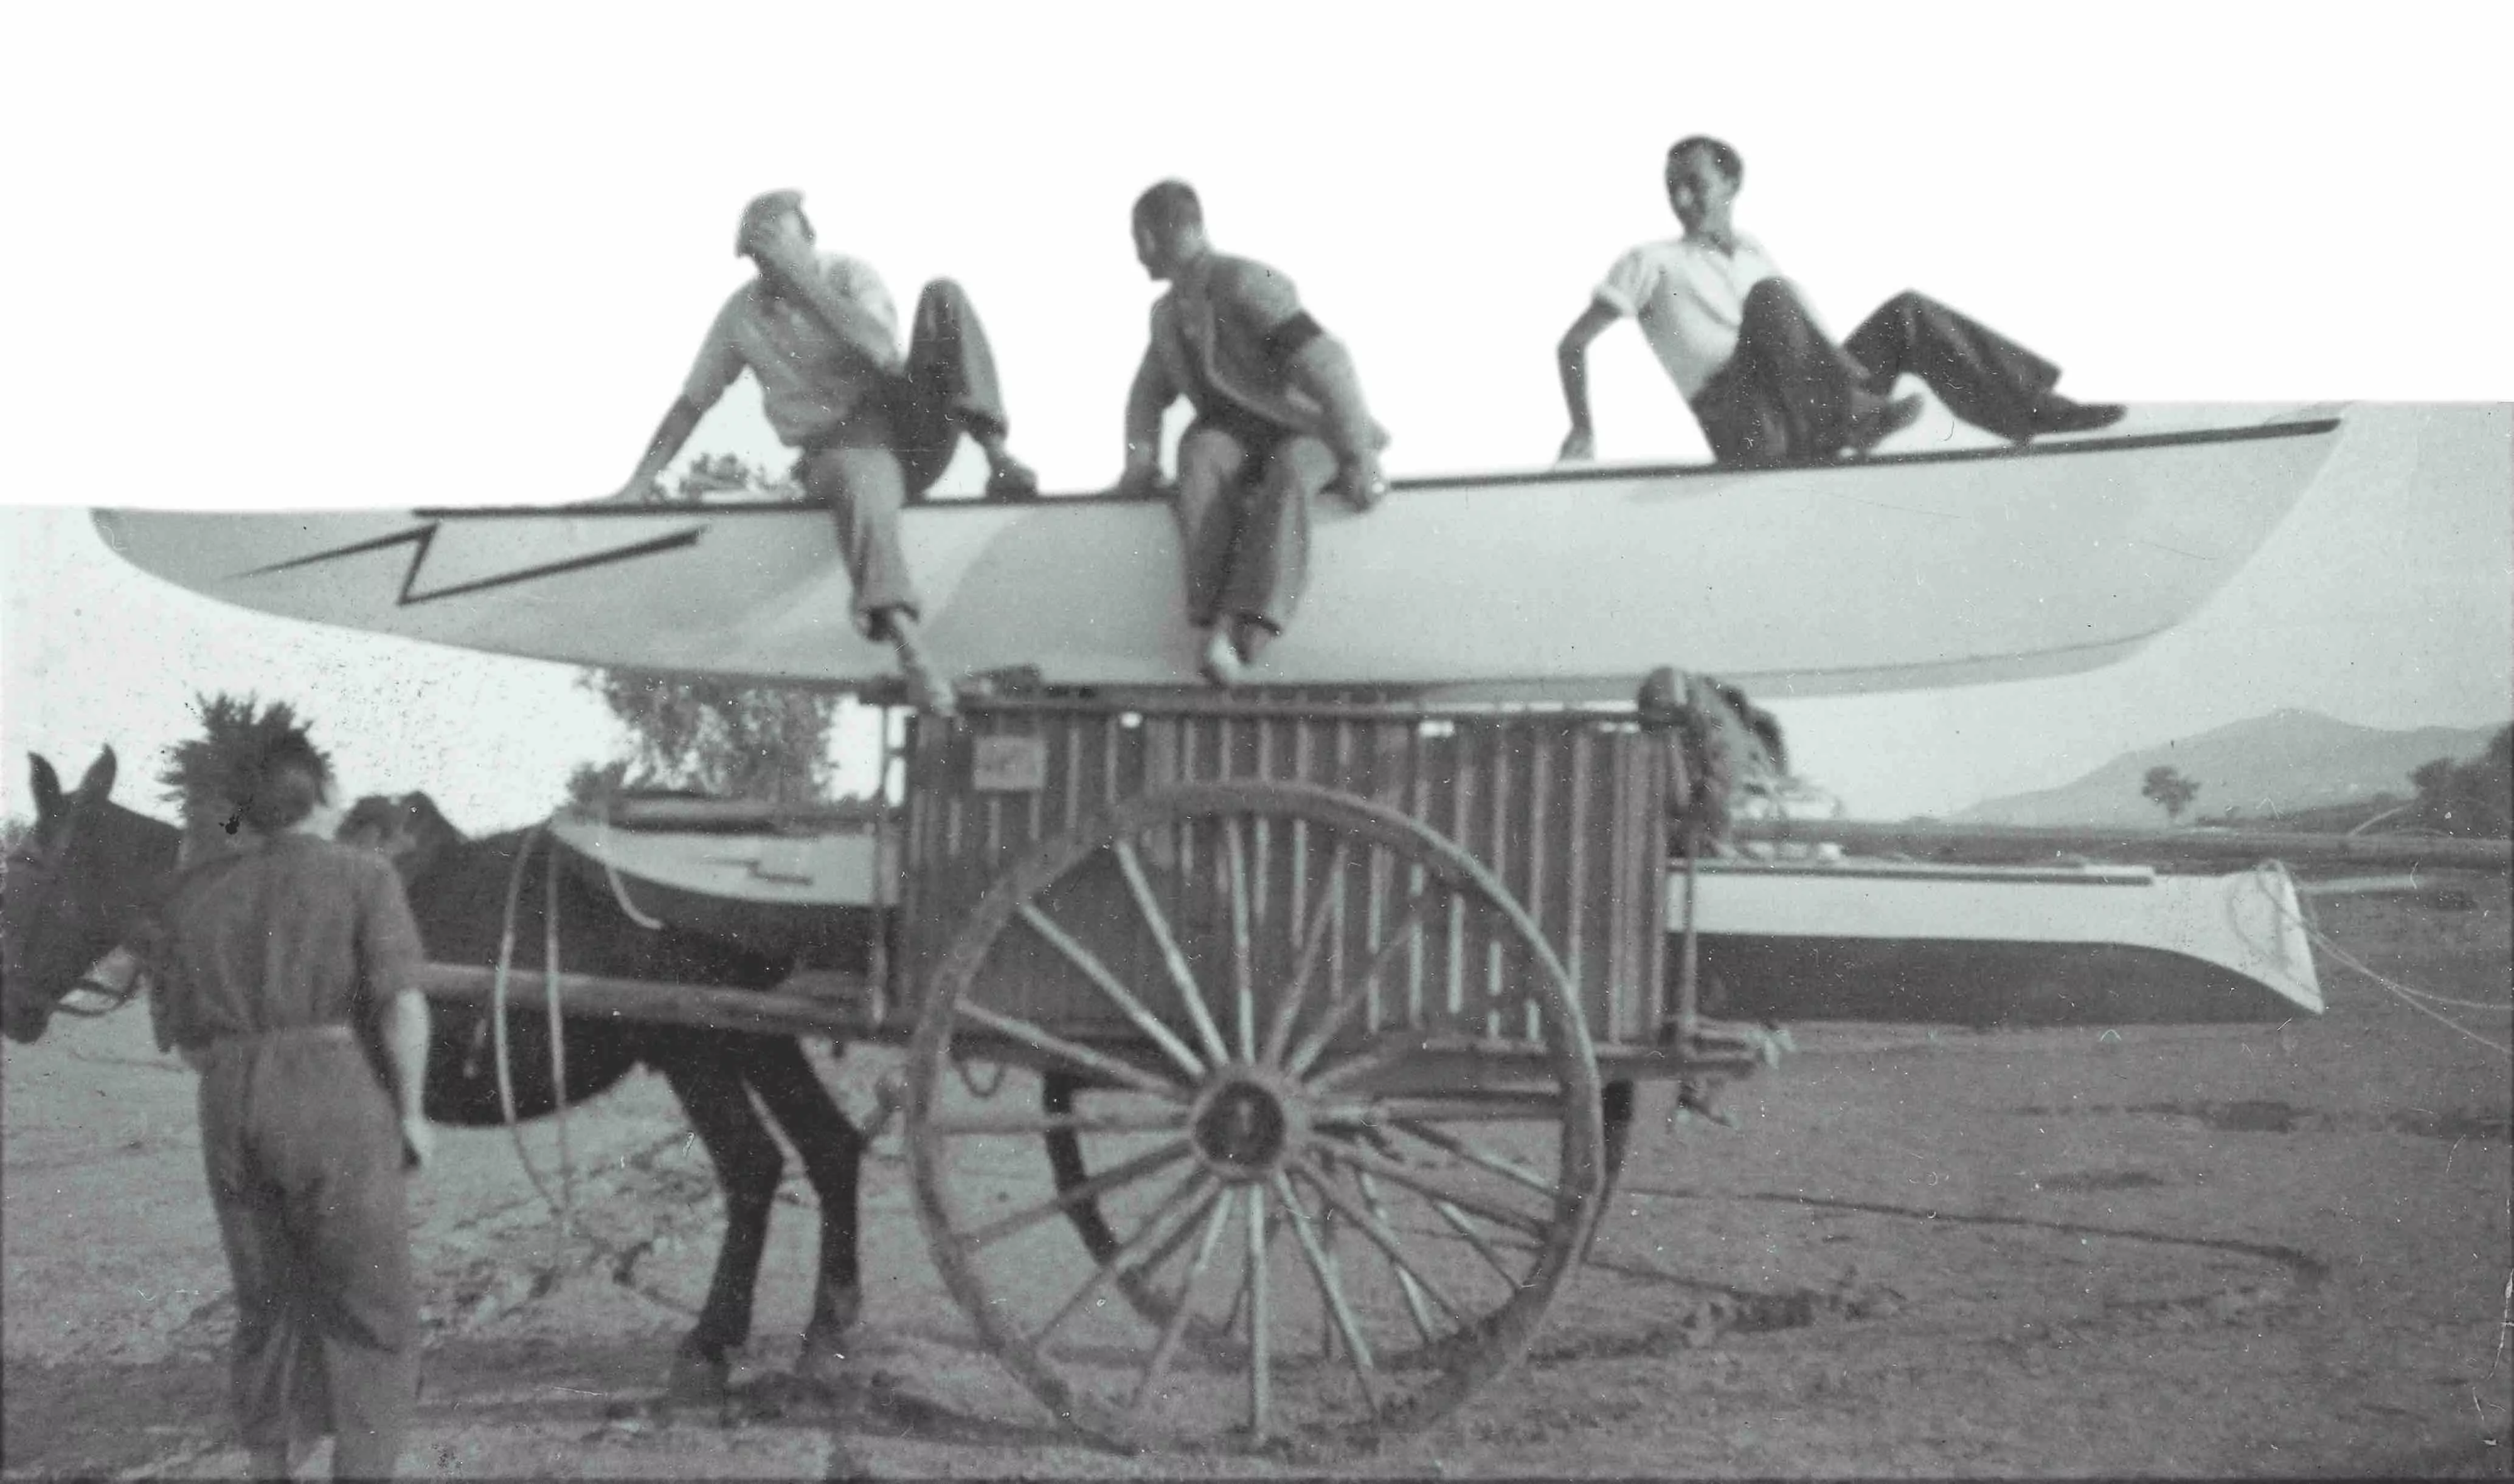 Un patí fabricat al Prat de Llobregat és transportat amb carro a la platja a mitjans dels anys 40